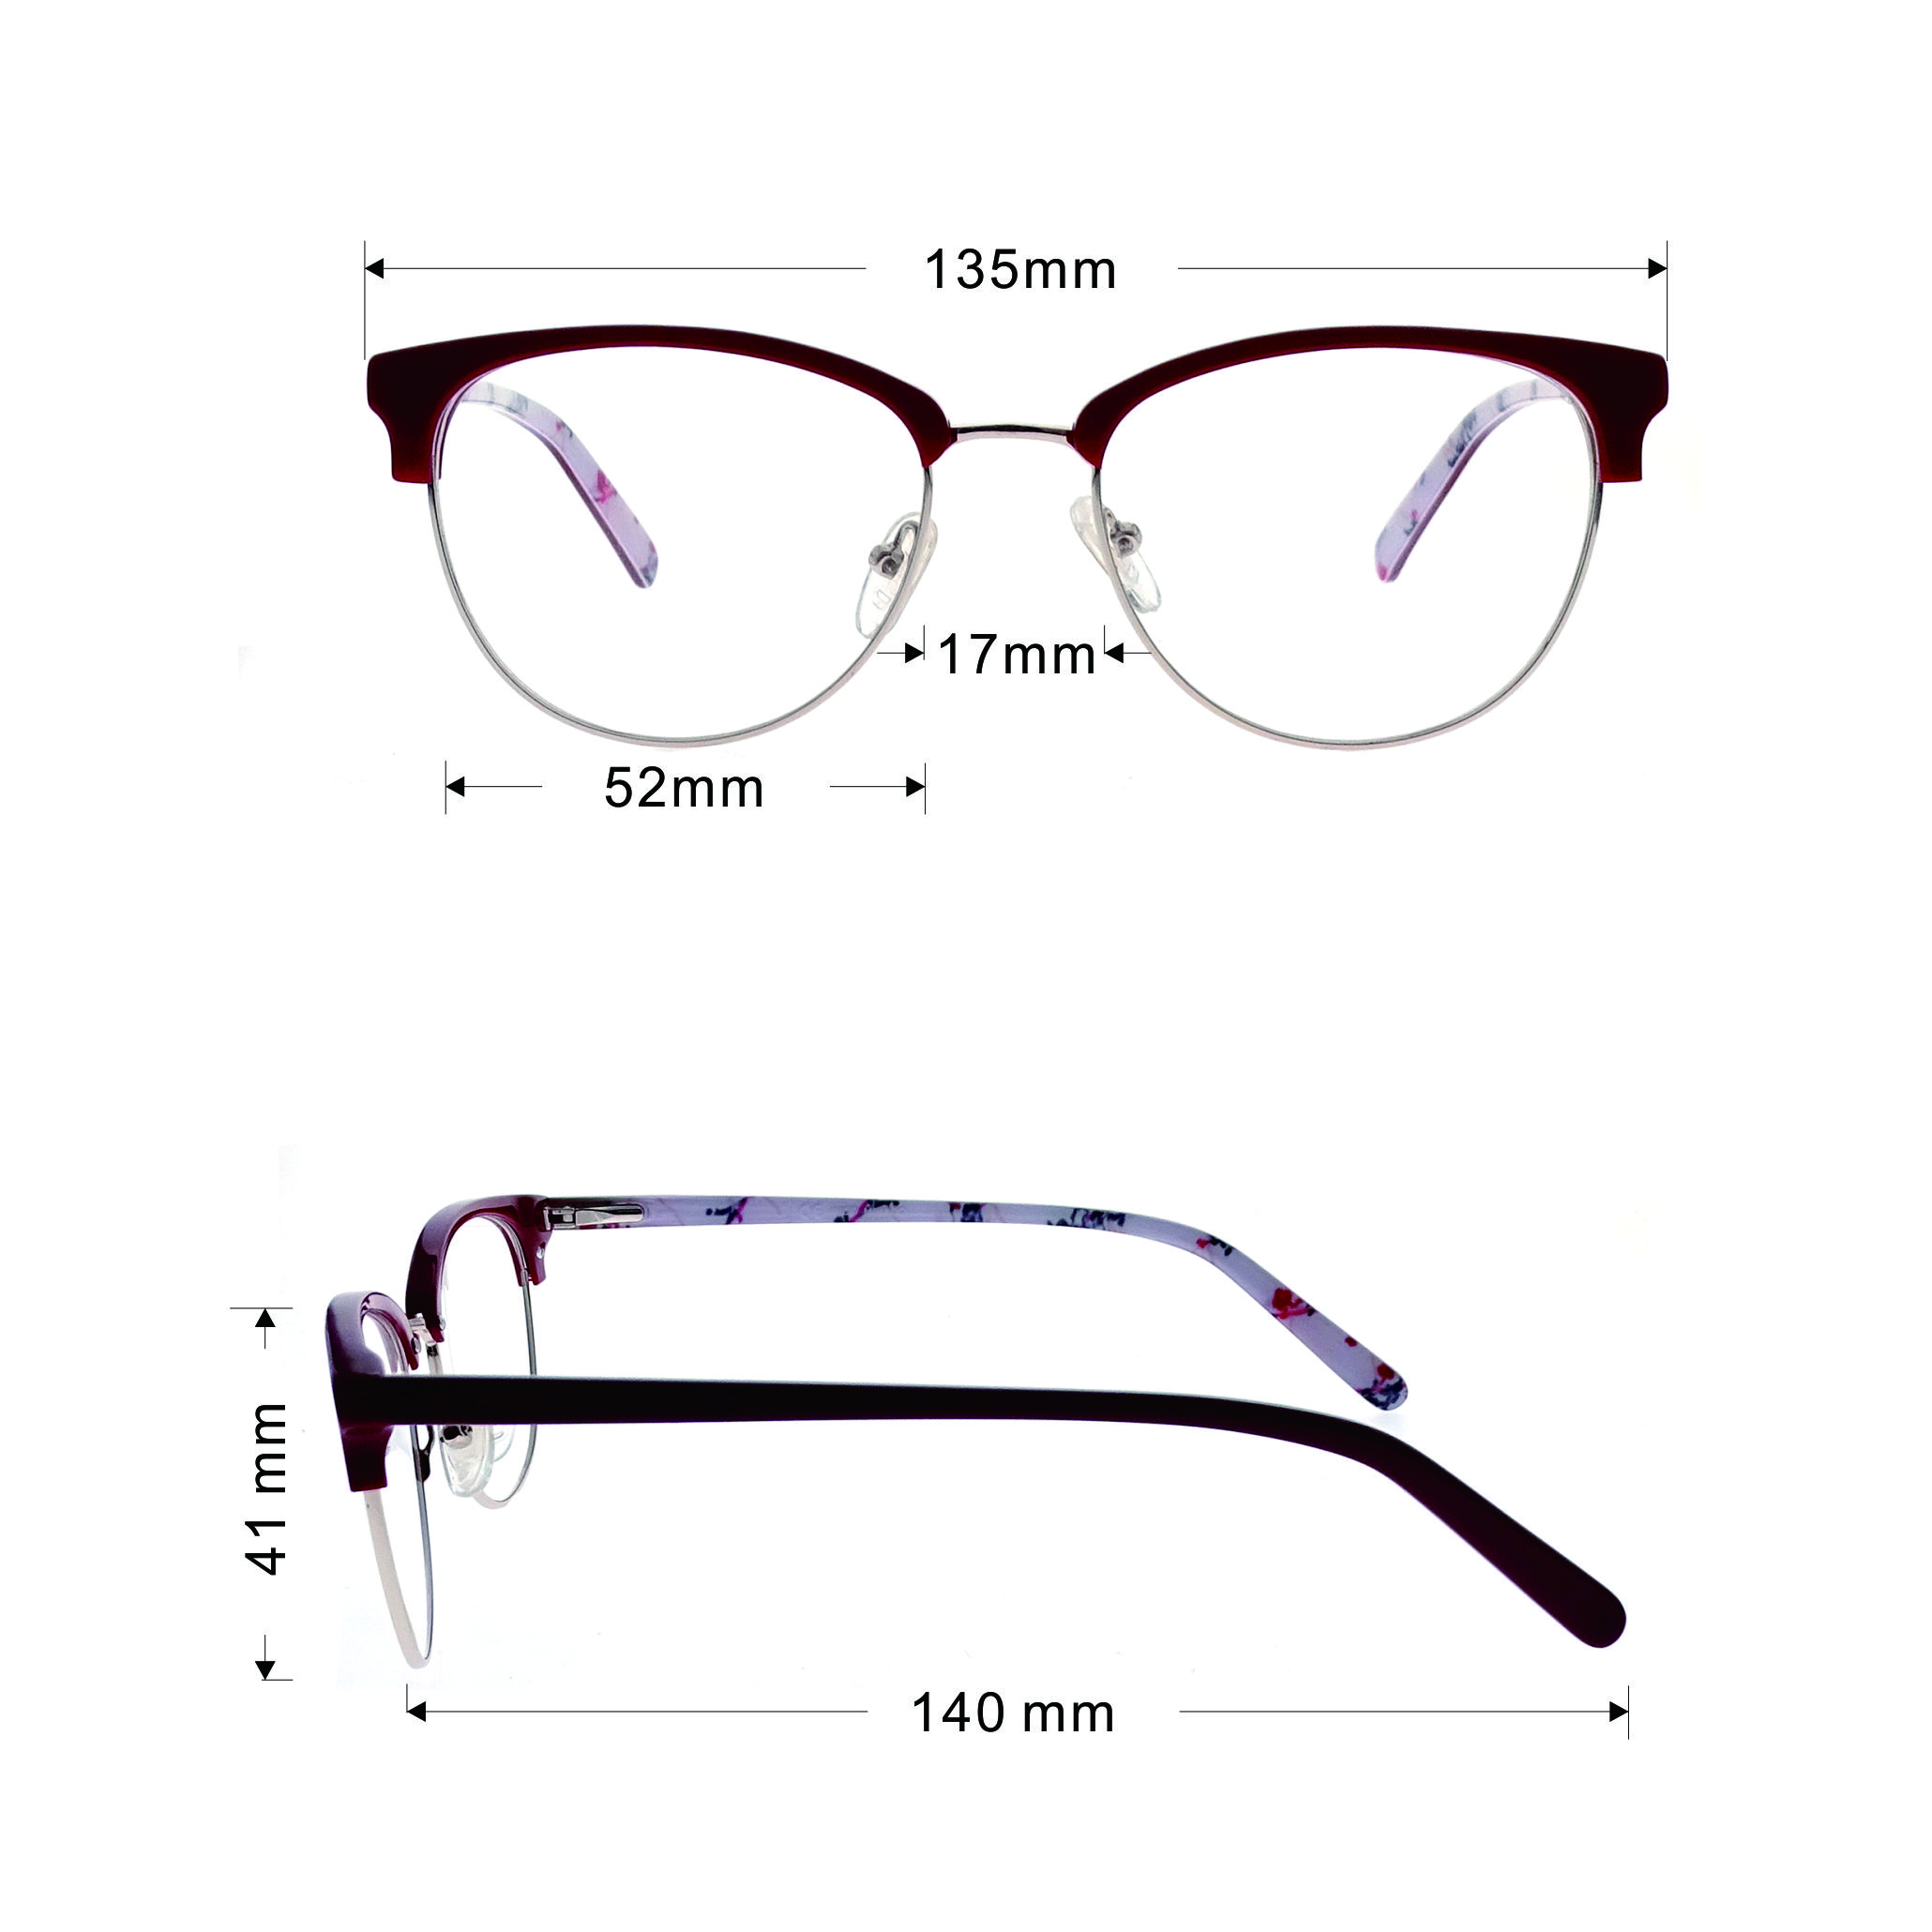 Marco de gafas de acetato Marcos ópticos unisex al por mayor LO-B592